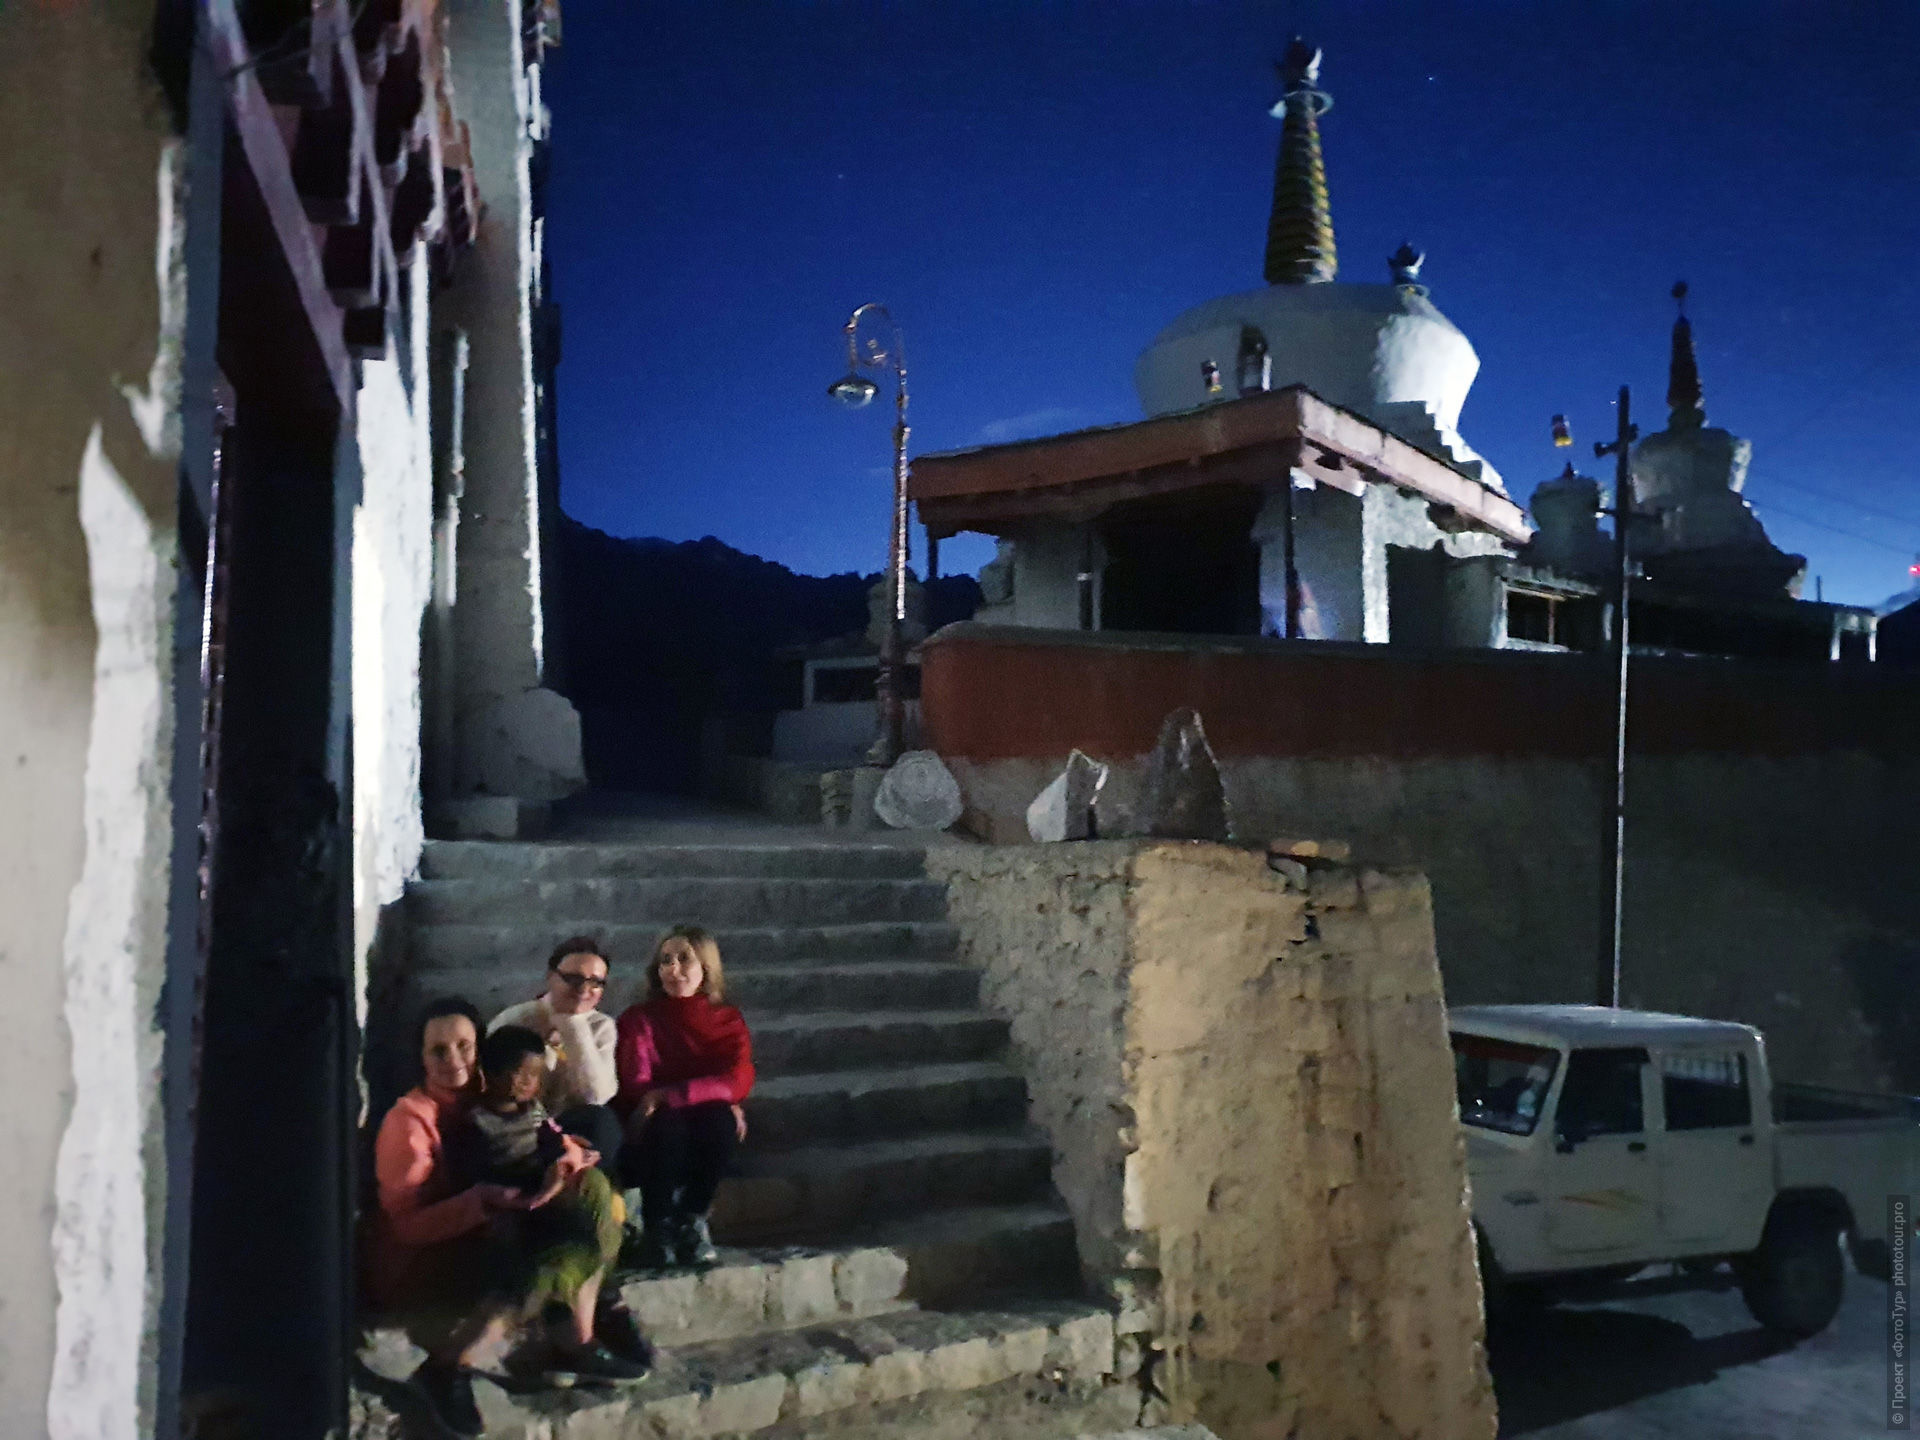 Фототур по Ладакху Тибет Озерный-1, июль 2019 года.